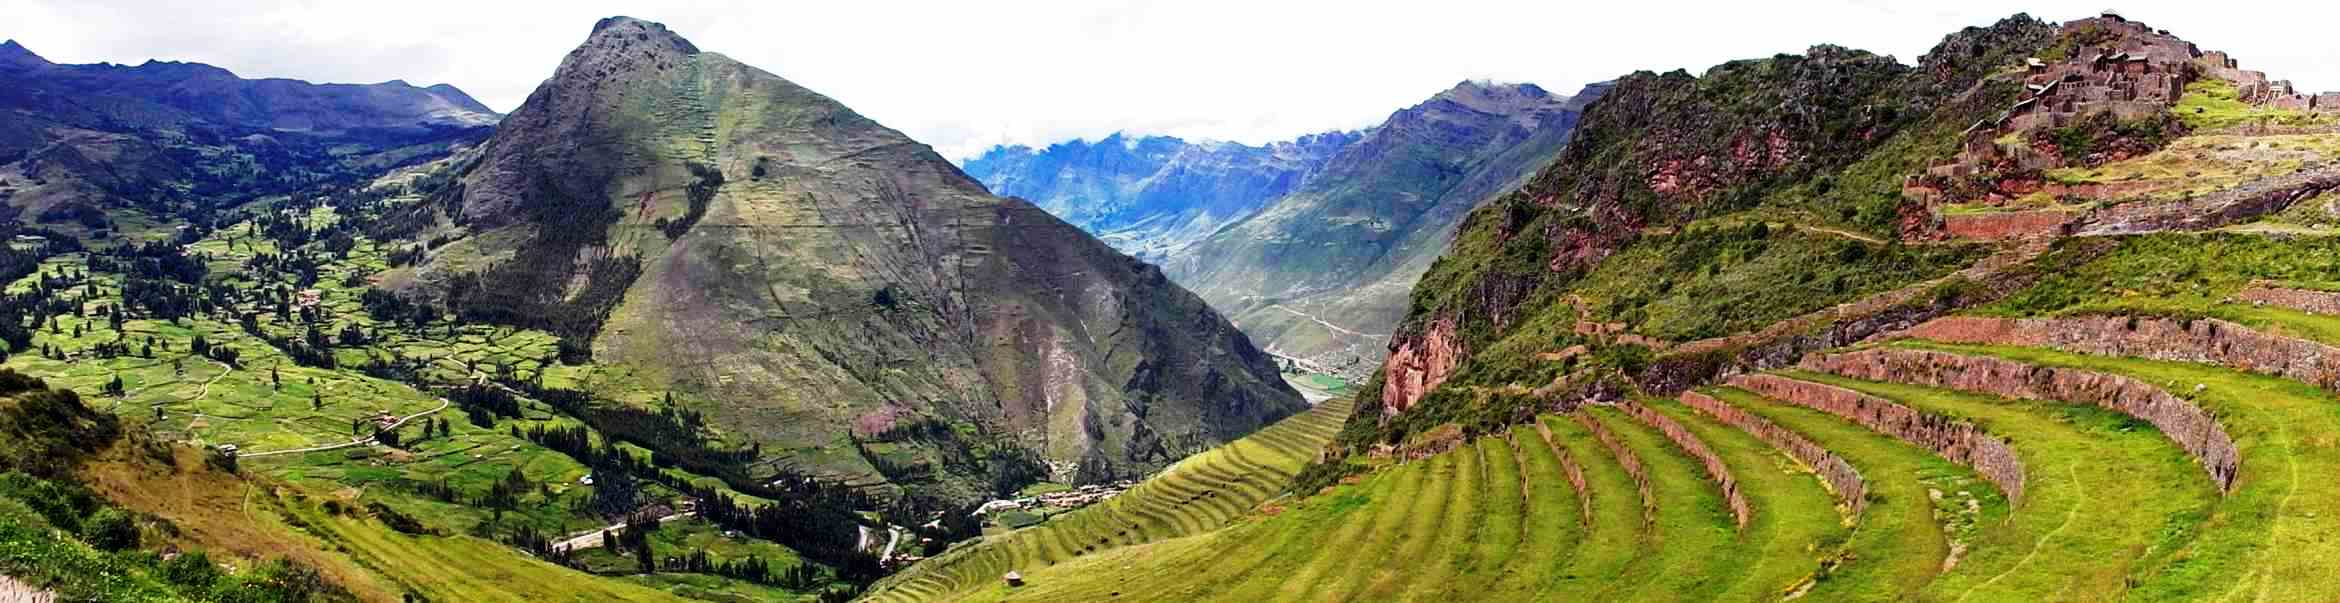 Los animales sagrados Inkas - Valle Sagrado